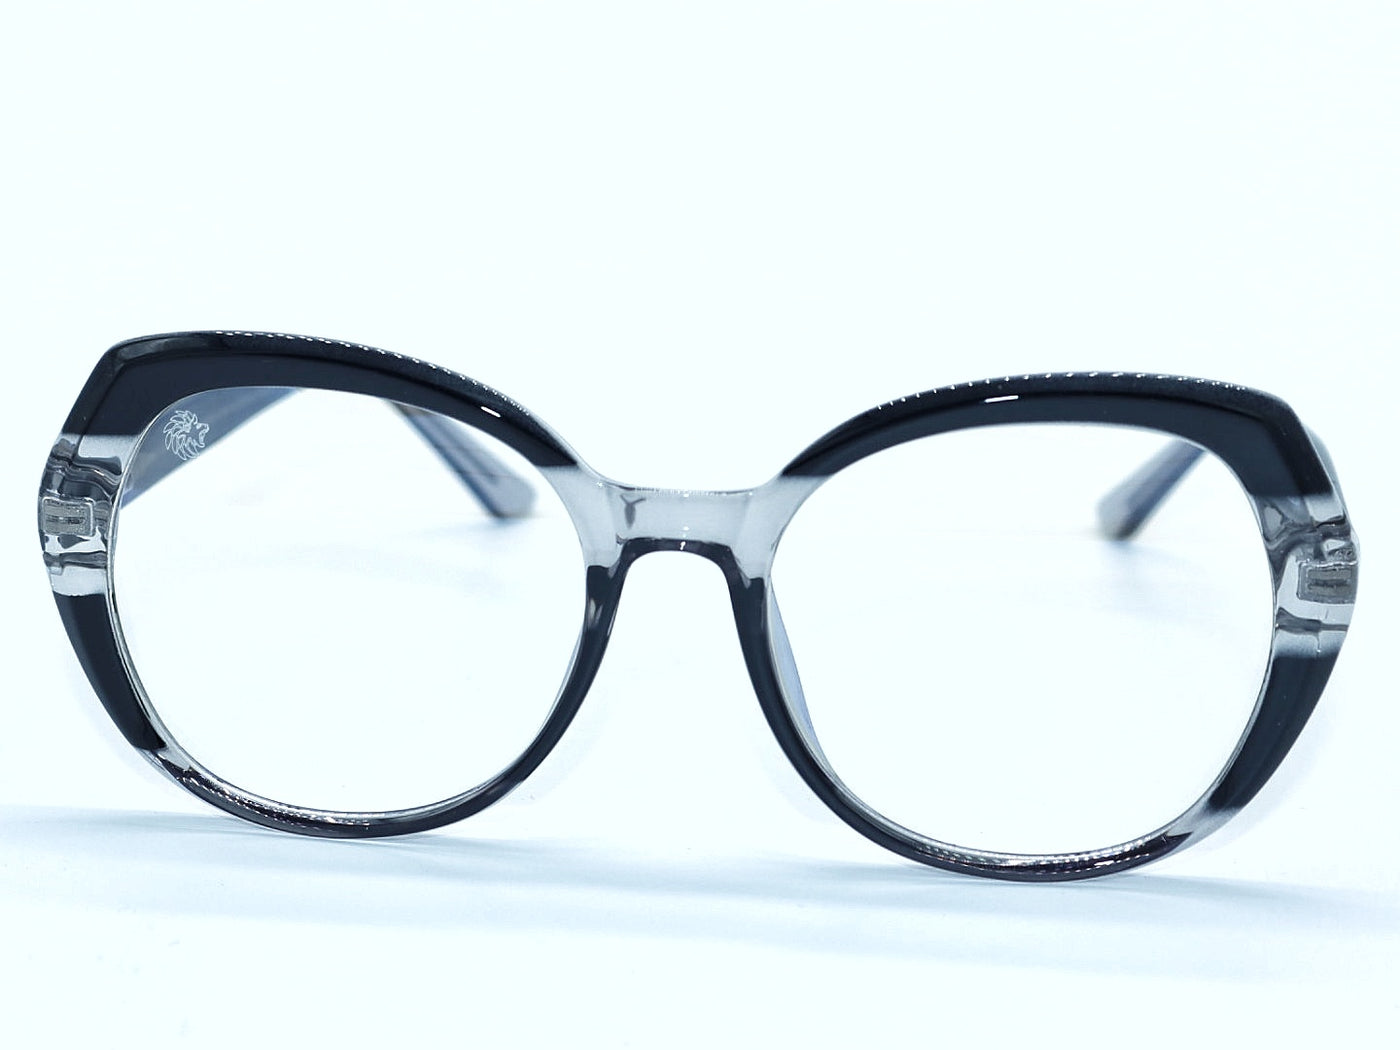 Solsa  Black frame glasses